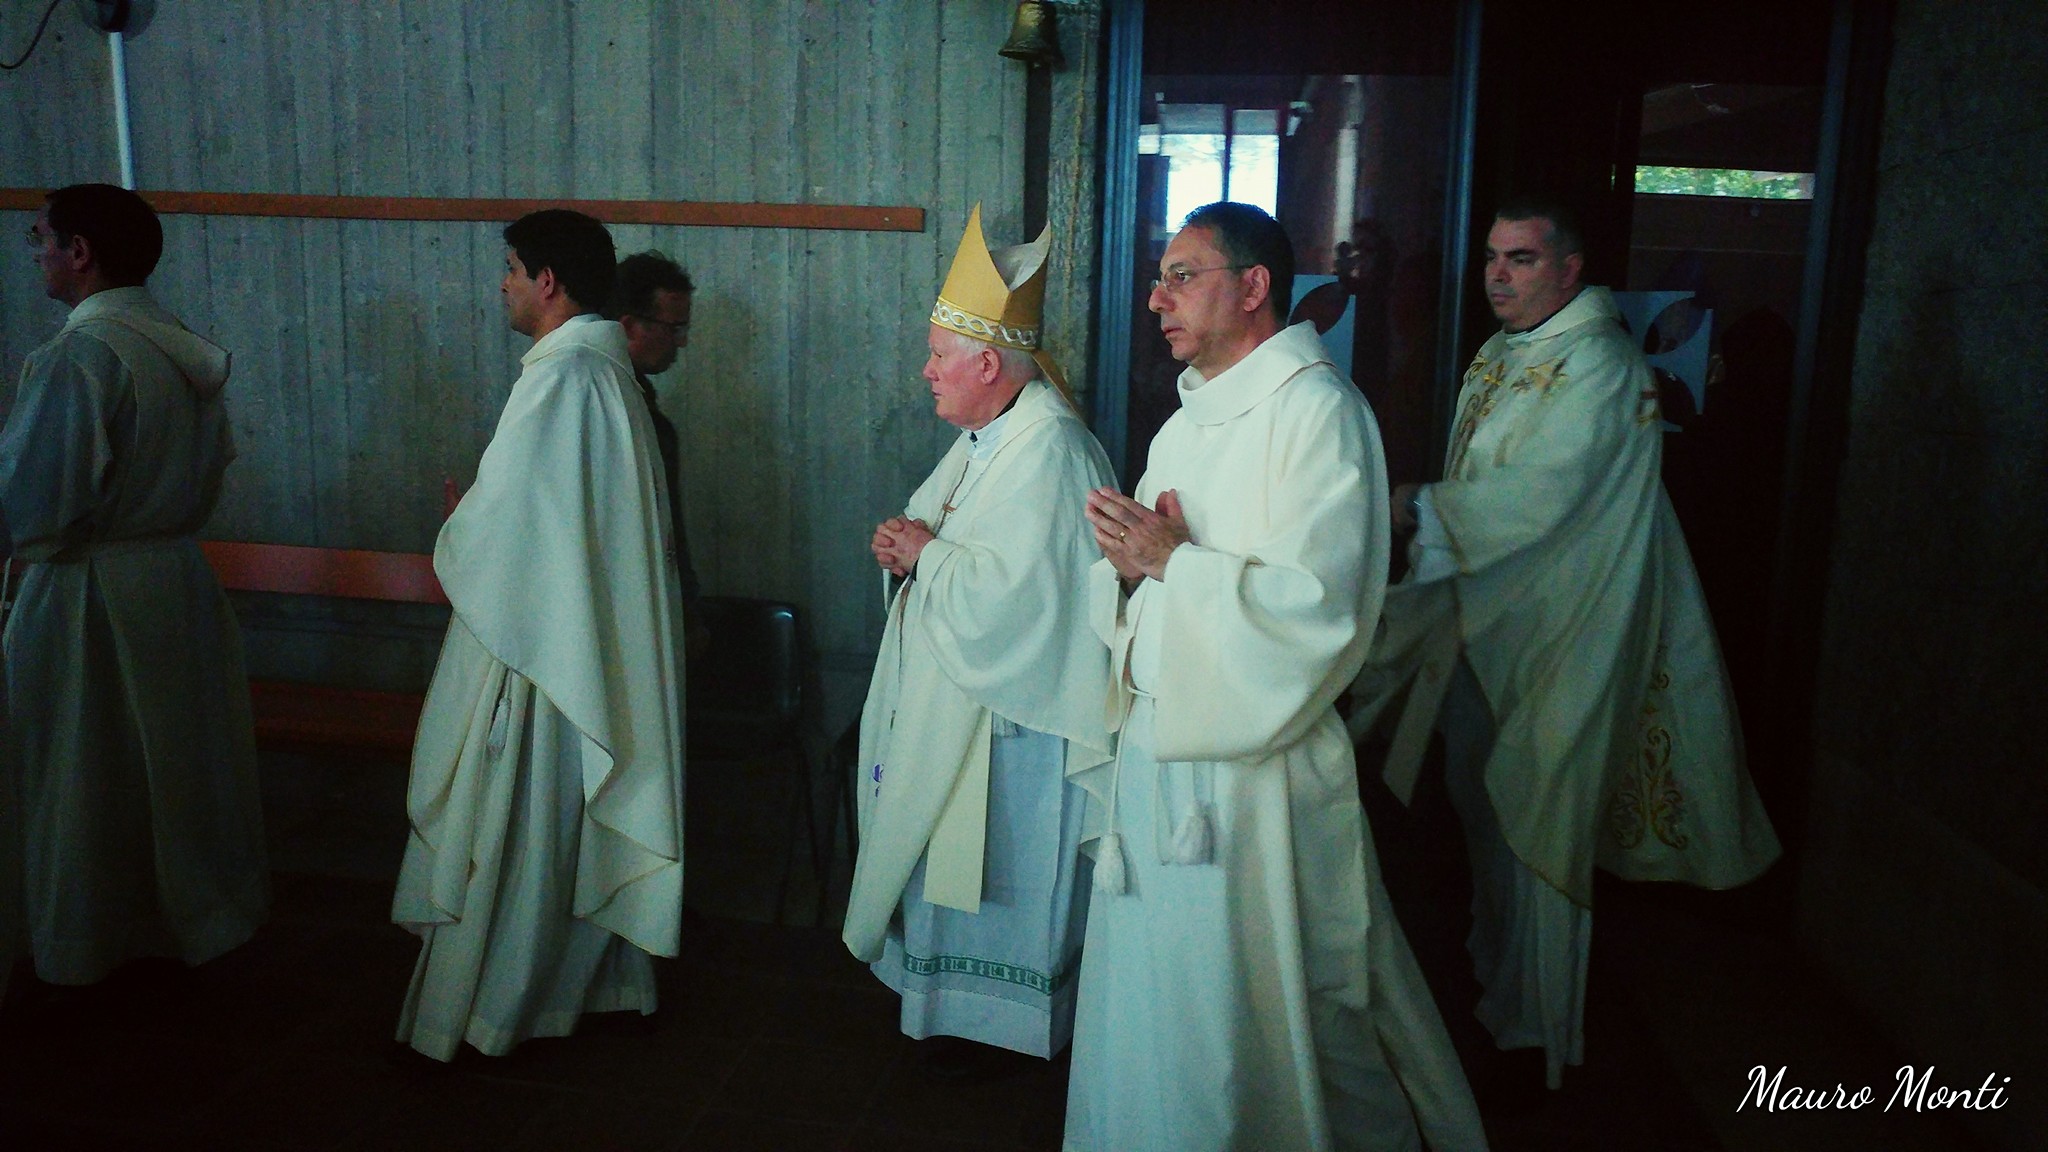 Celebrazione eucaristica. Preside S.E.R. Mon Antonio Santarsiero vescovo di Houcho - Lima Perù